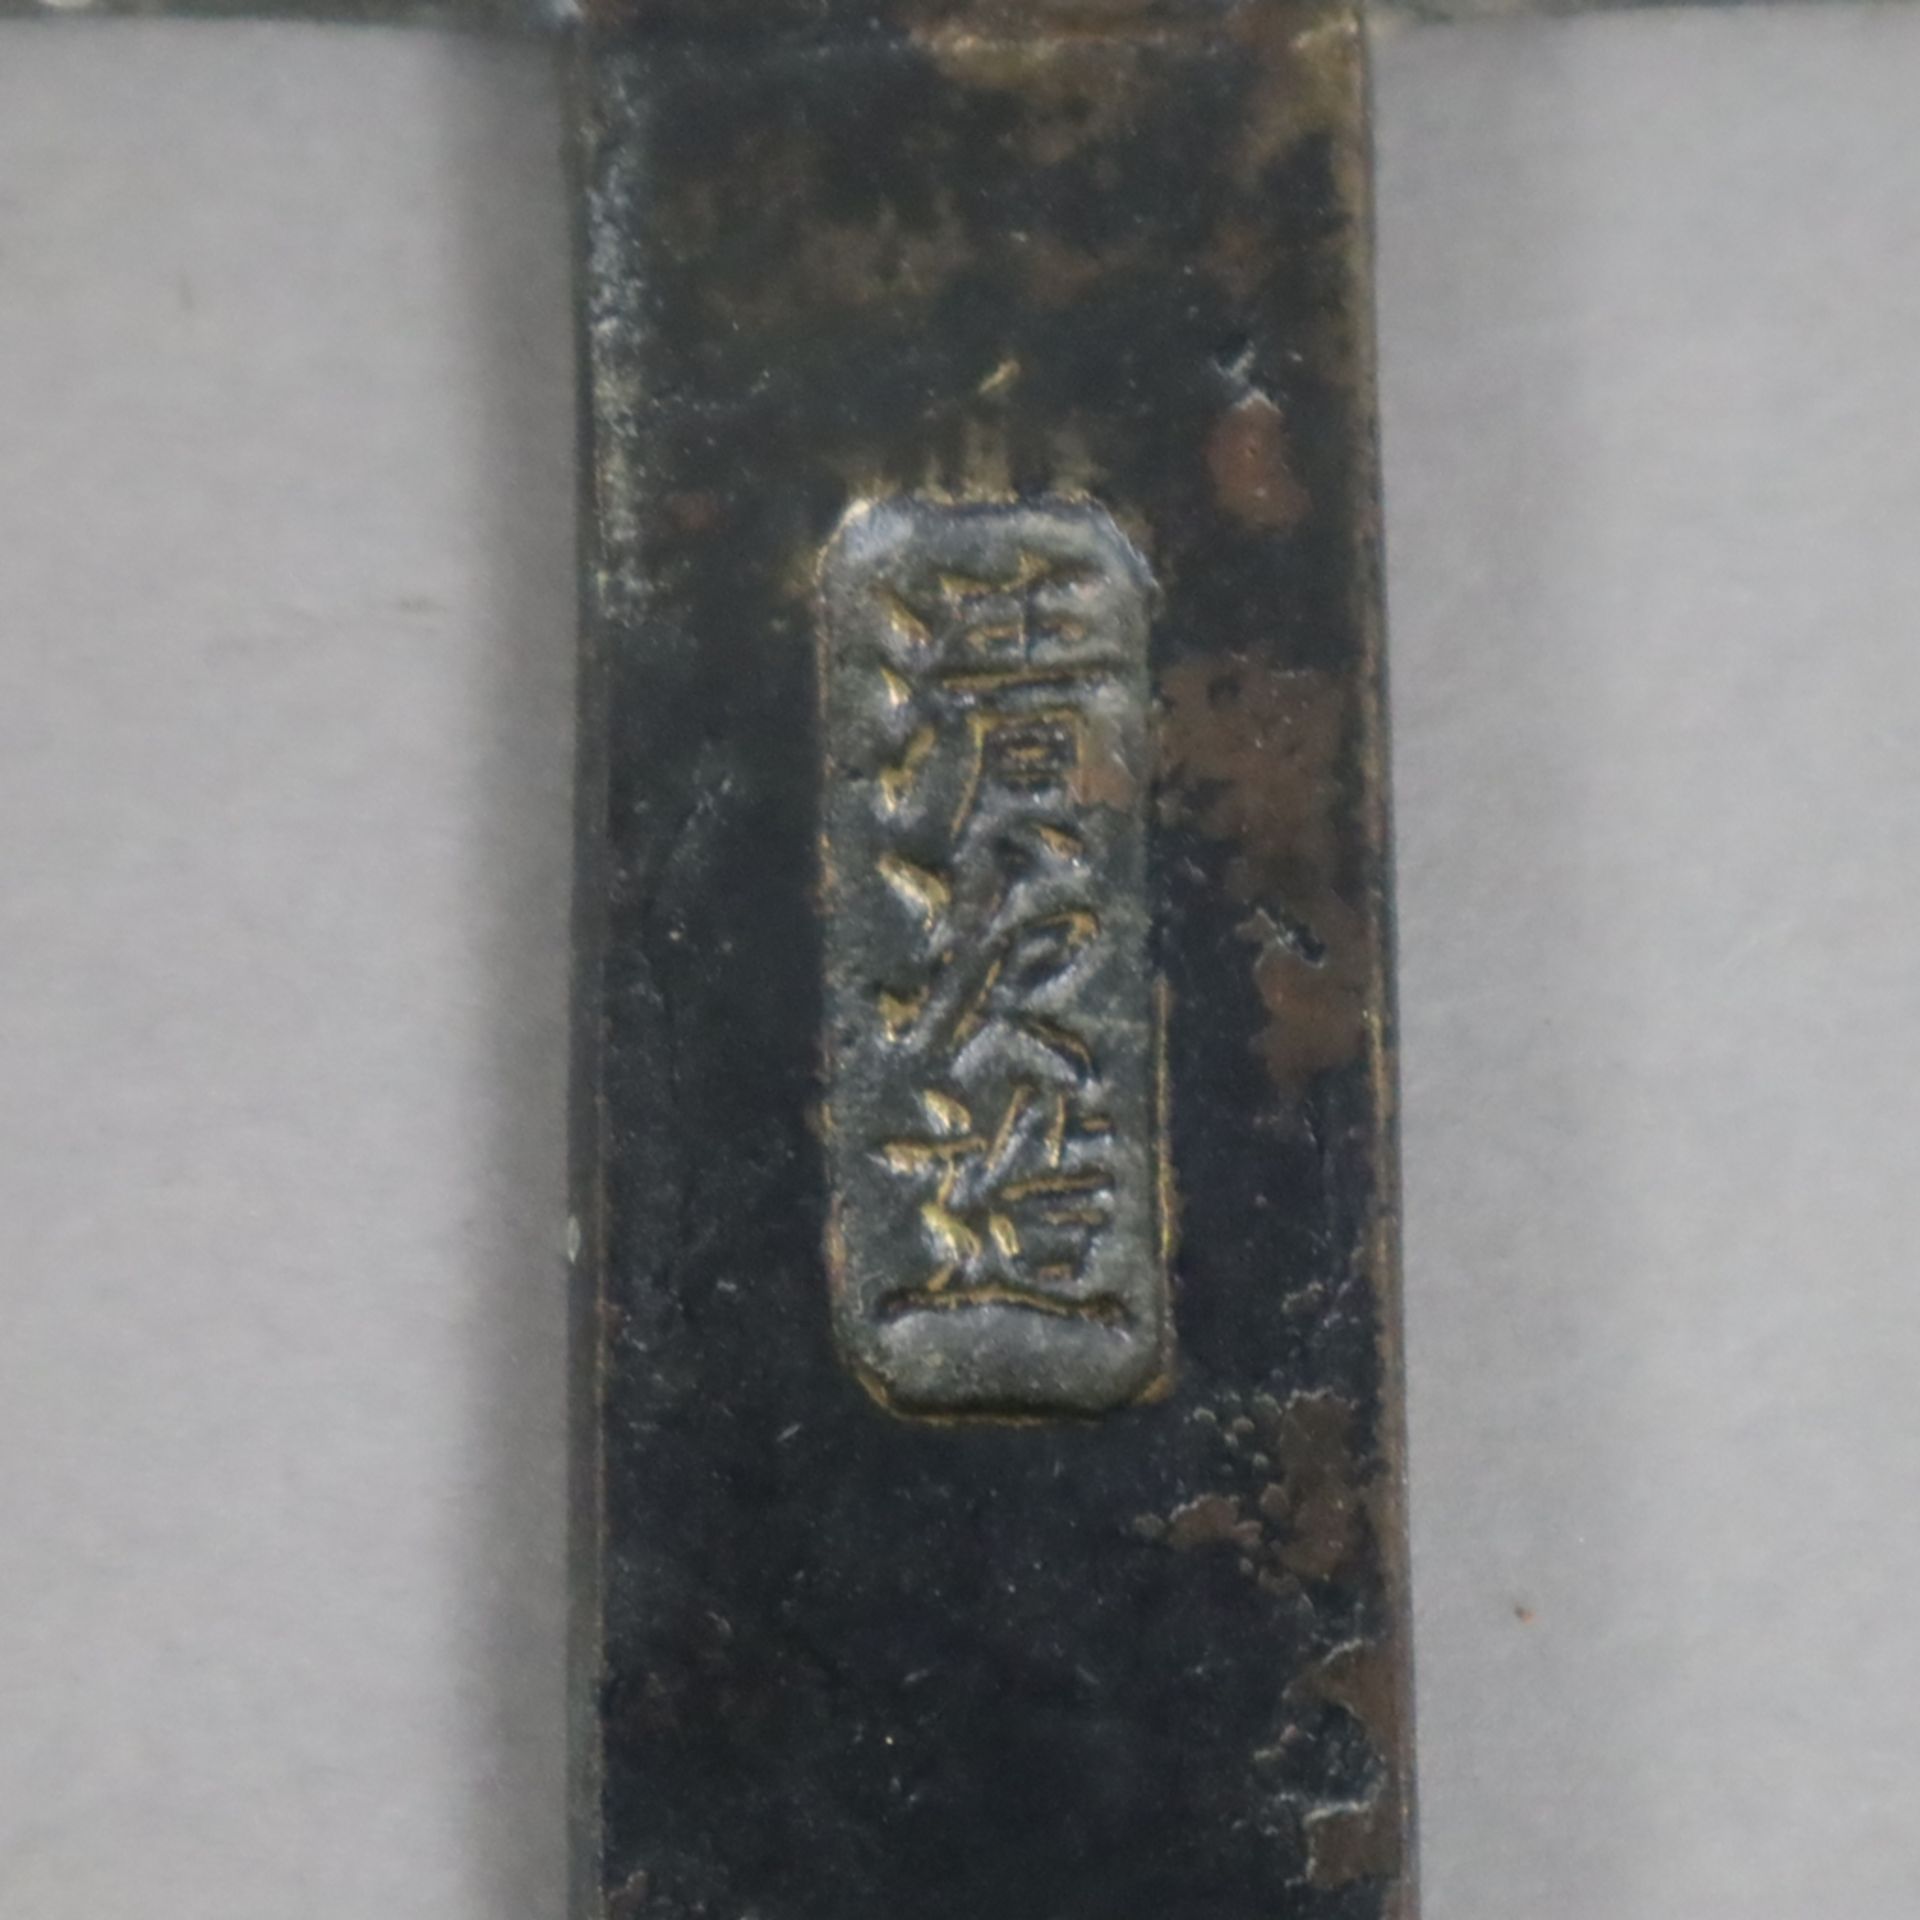 Handspiegel aus Bronze - Japan, Bronze mit dunkler Patina, zierreliefiert, gegossene Signaturkartus - Image 4 of 5